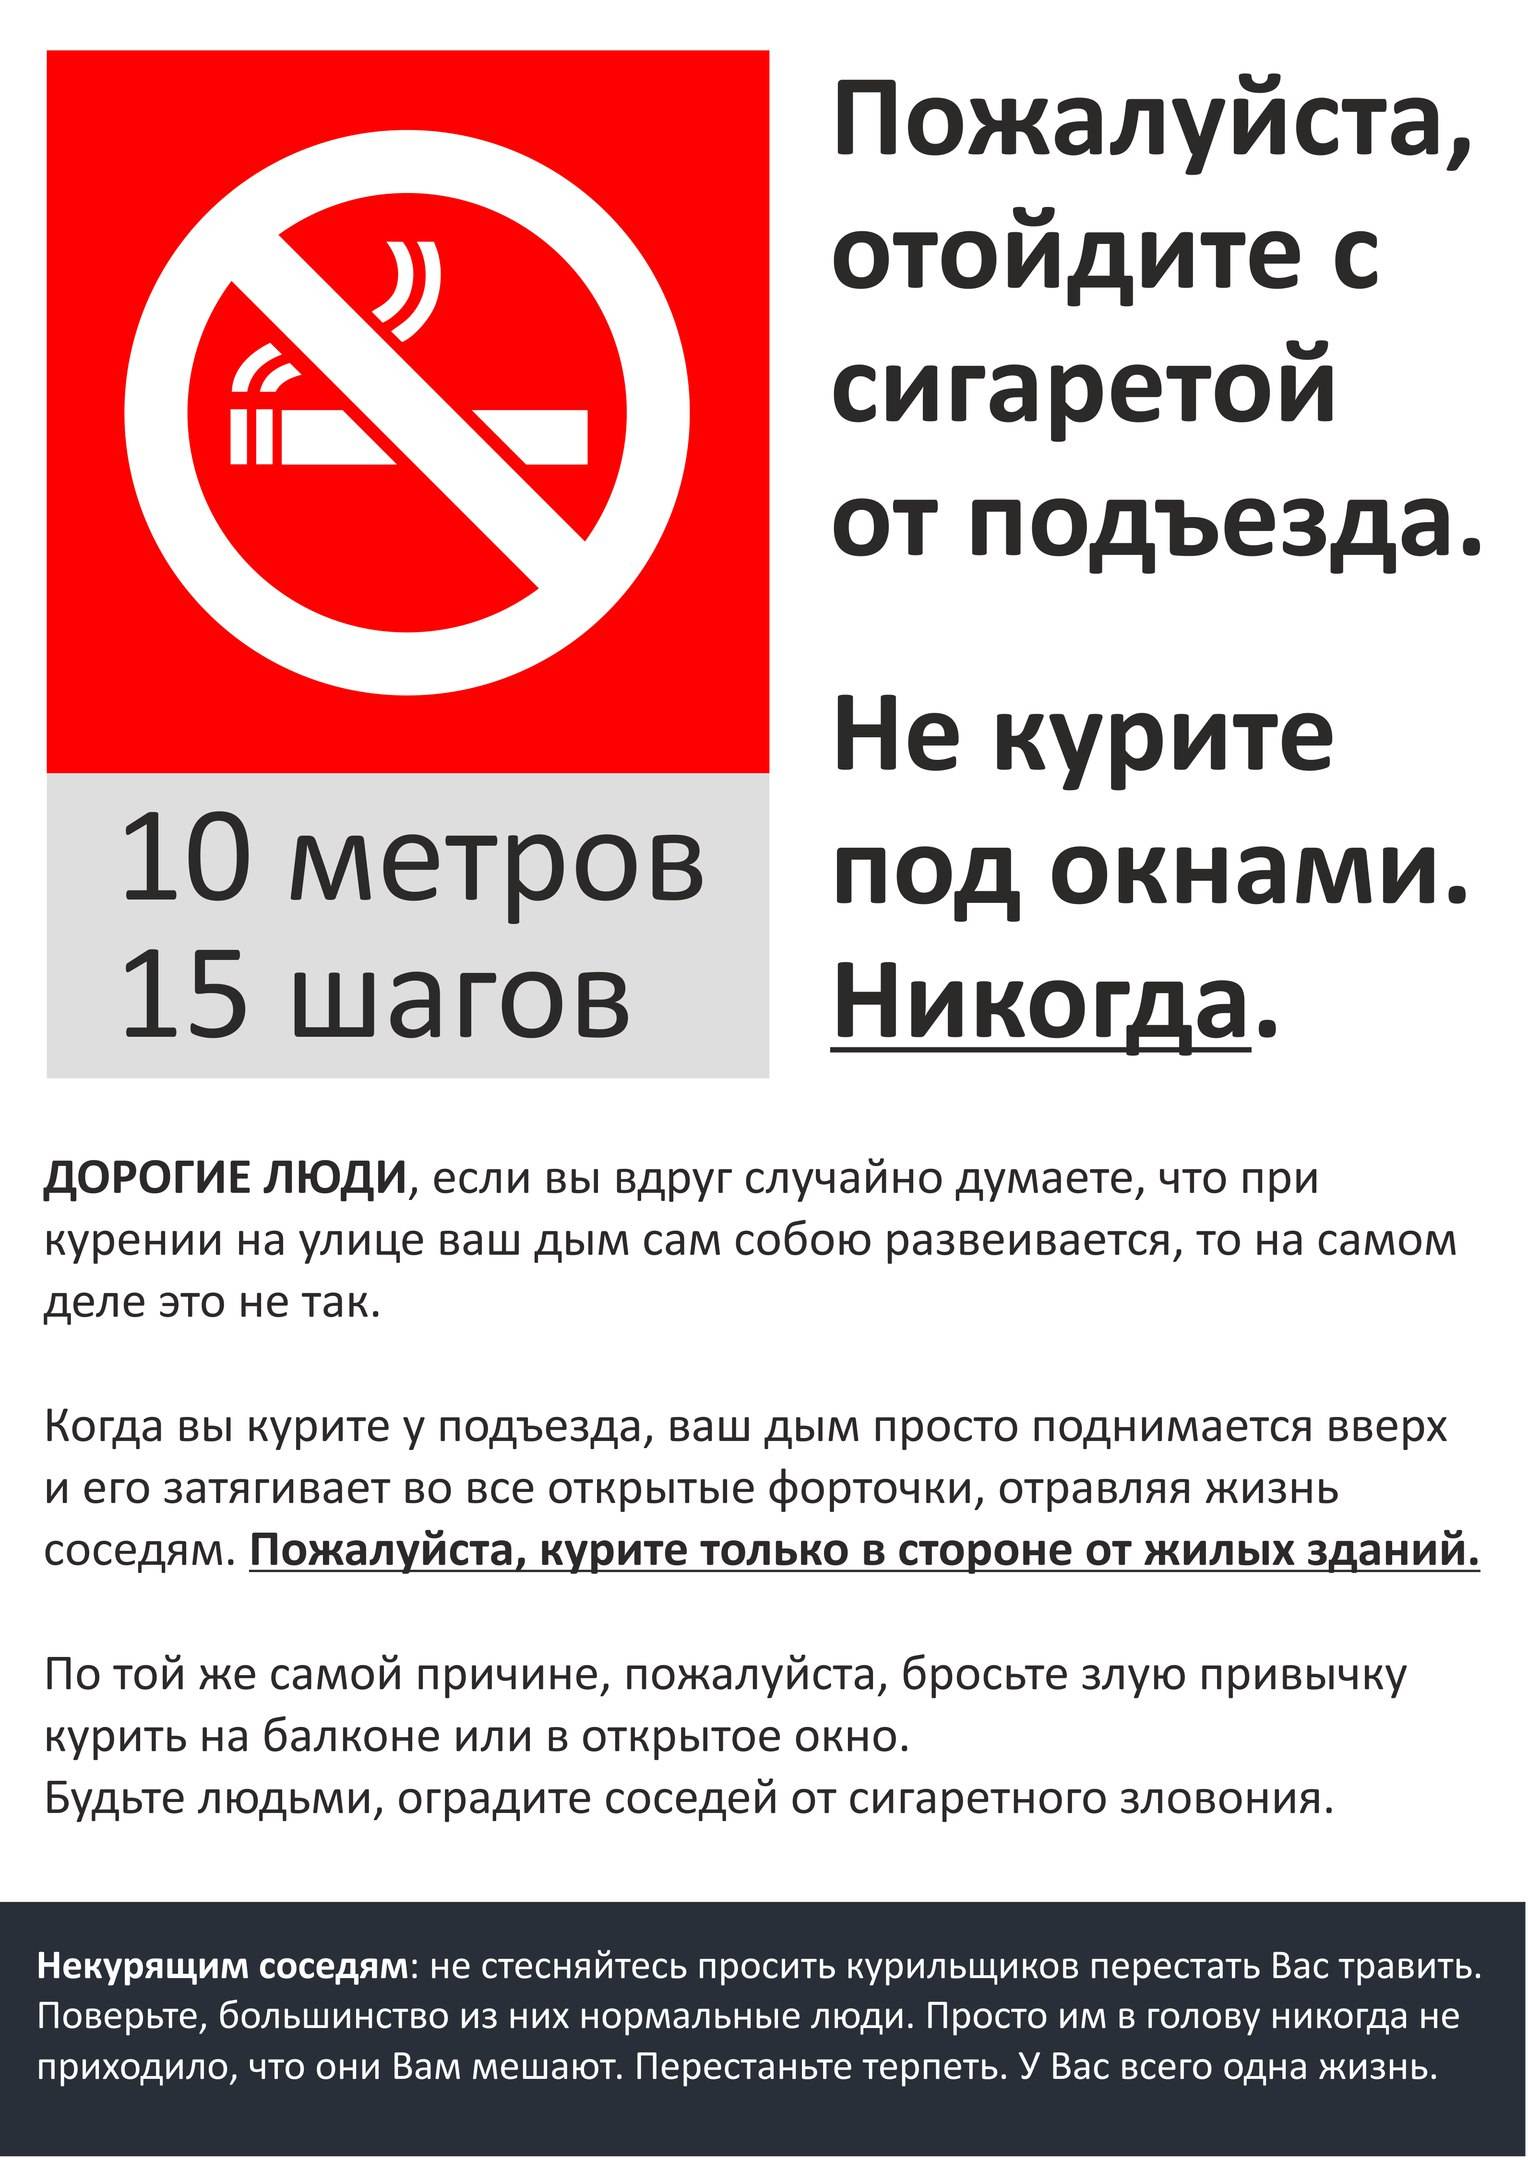 Курение в общественных местах — статья. можно ли курить на балконе многоквартирного дома?